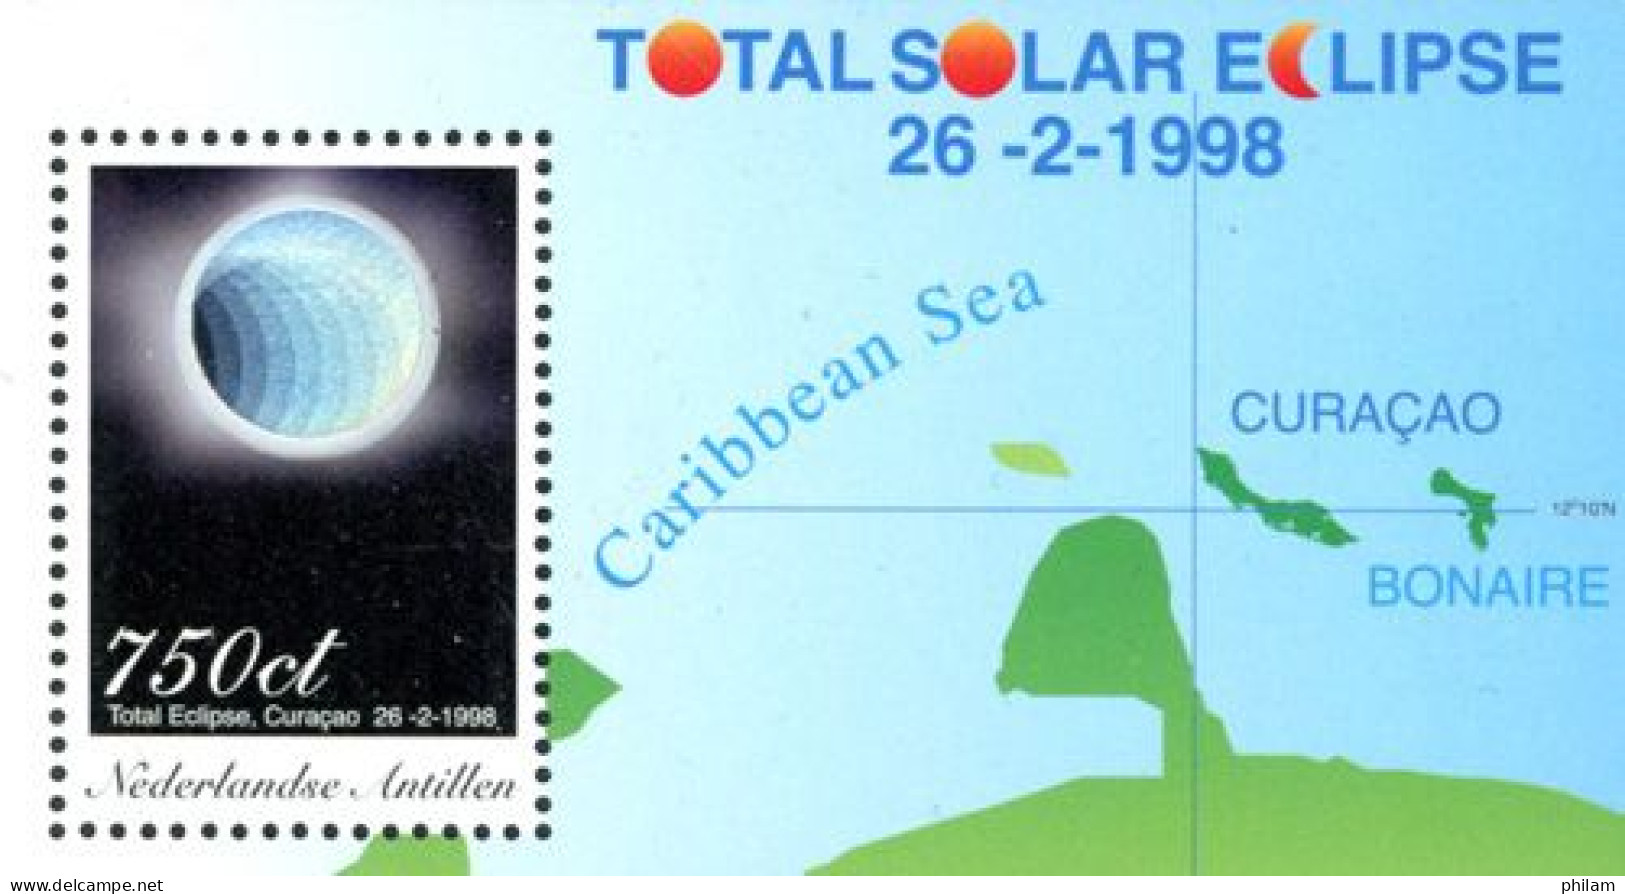 ANTILLES NEERLANDAISES 1998 - Eclipse Solaire -  Hologramme -1 BF - Curaçao, Antilles Neérlandaises, Aruba